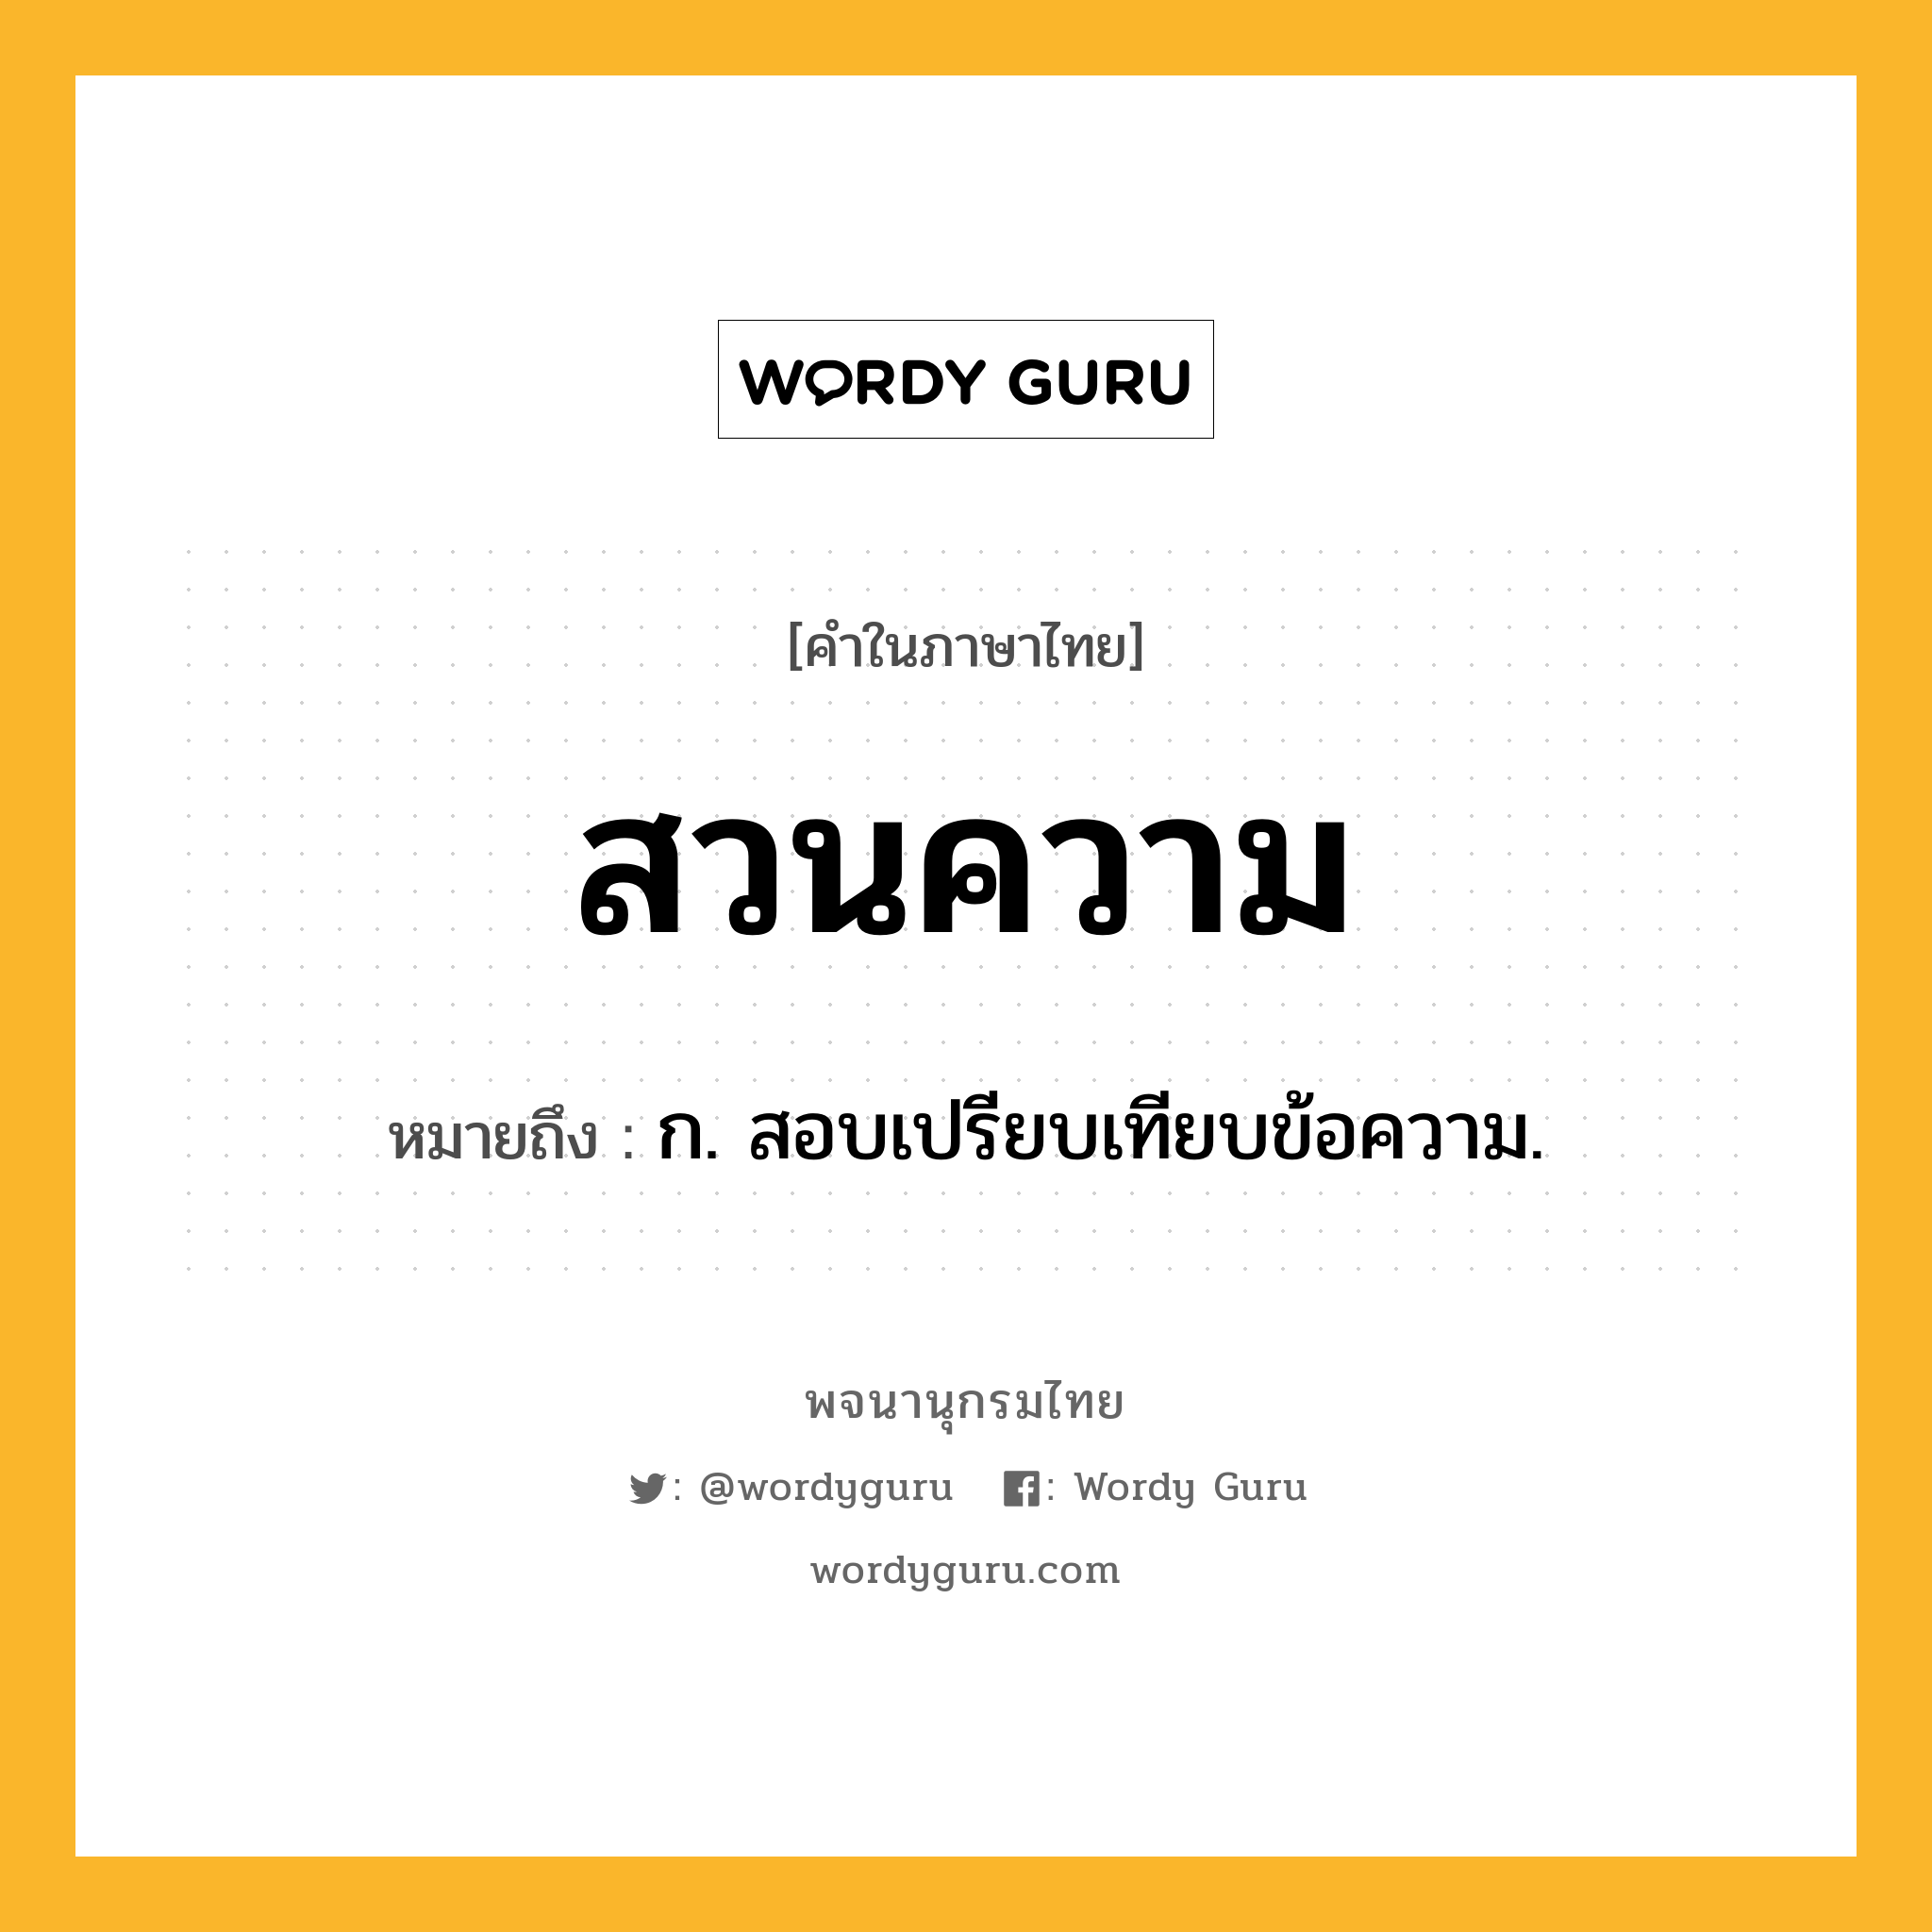 สวนความ ความหมาย หมายถึงอะไร?, คำในภาษาไทย สวนความ หมายถึง ก. สอบเปรียบเทียบข้อความ.